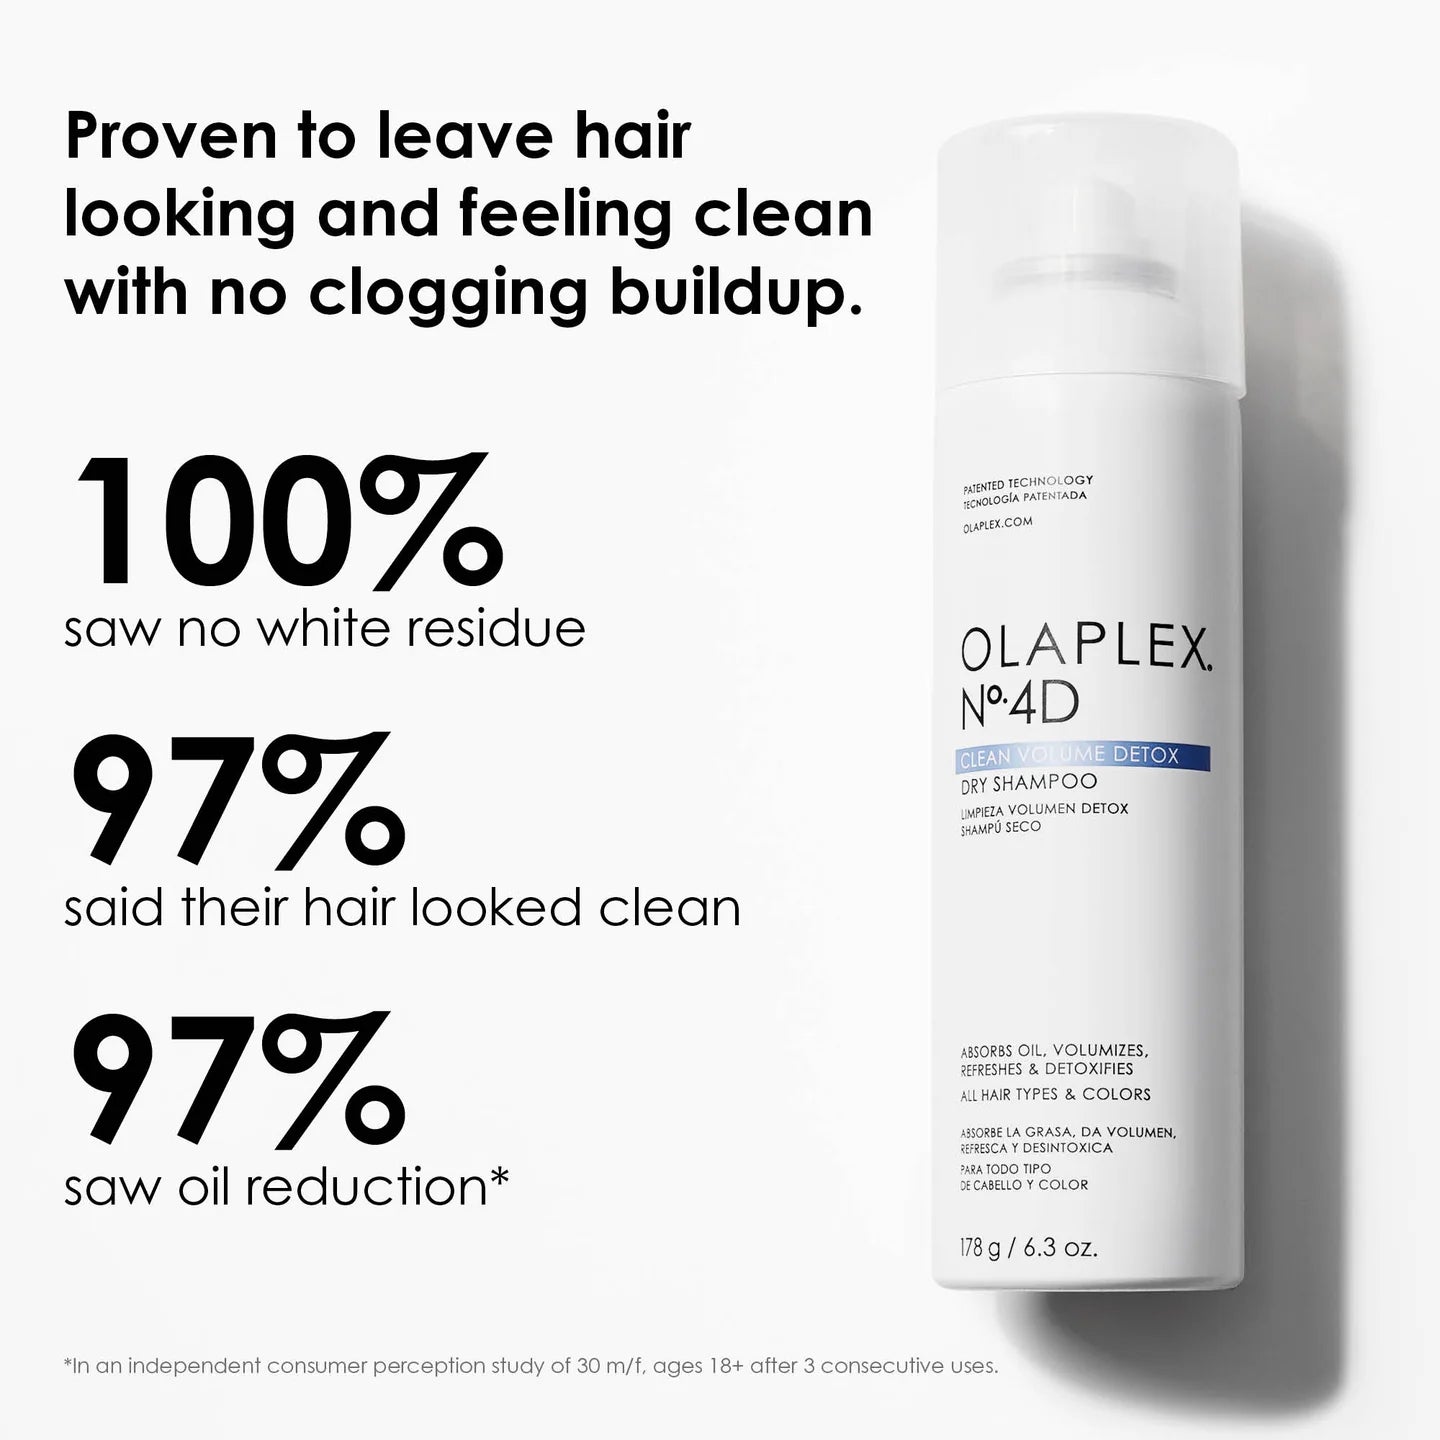 Olaplex - No.4D Detox Dry Shampoo 178g